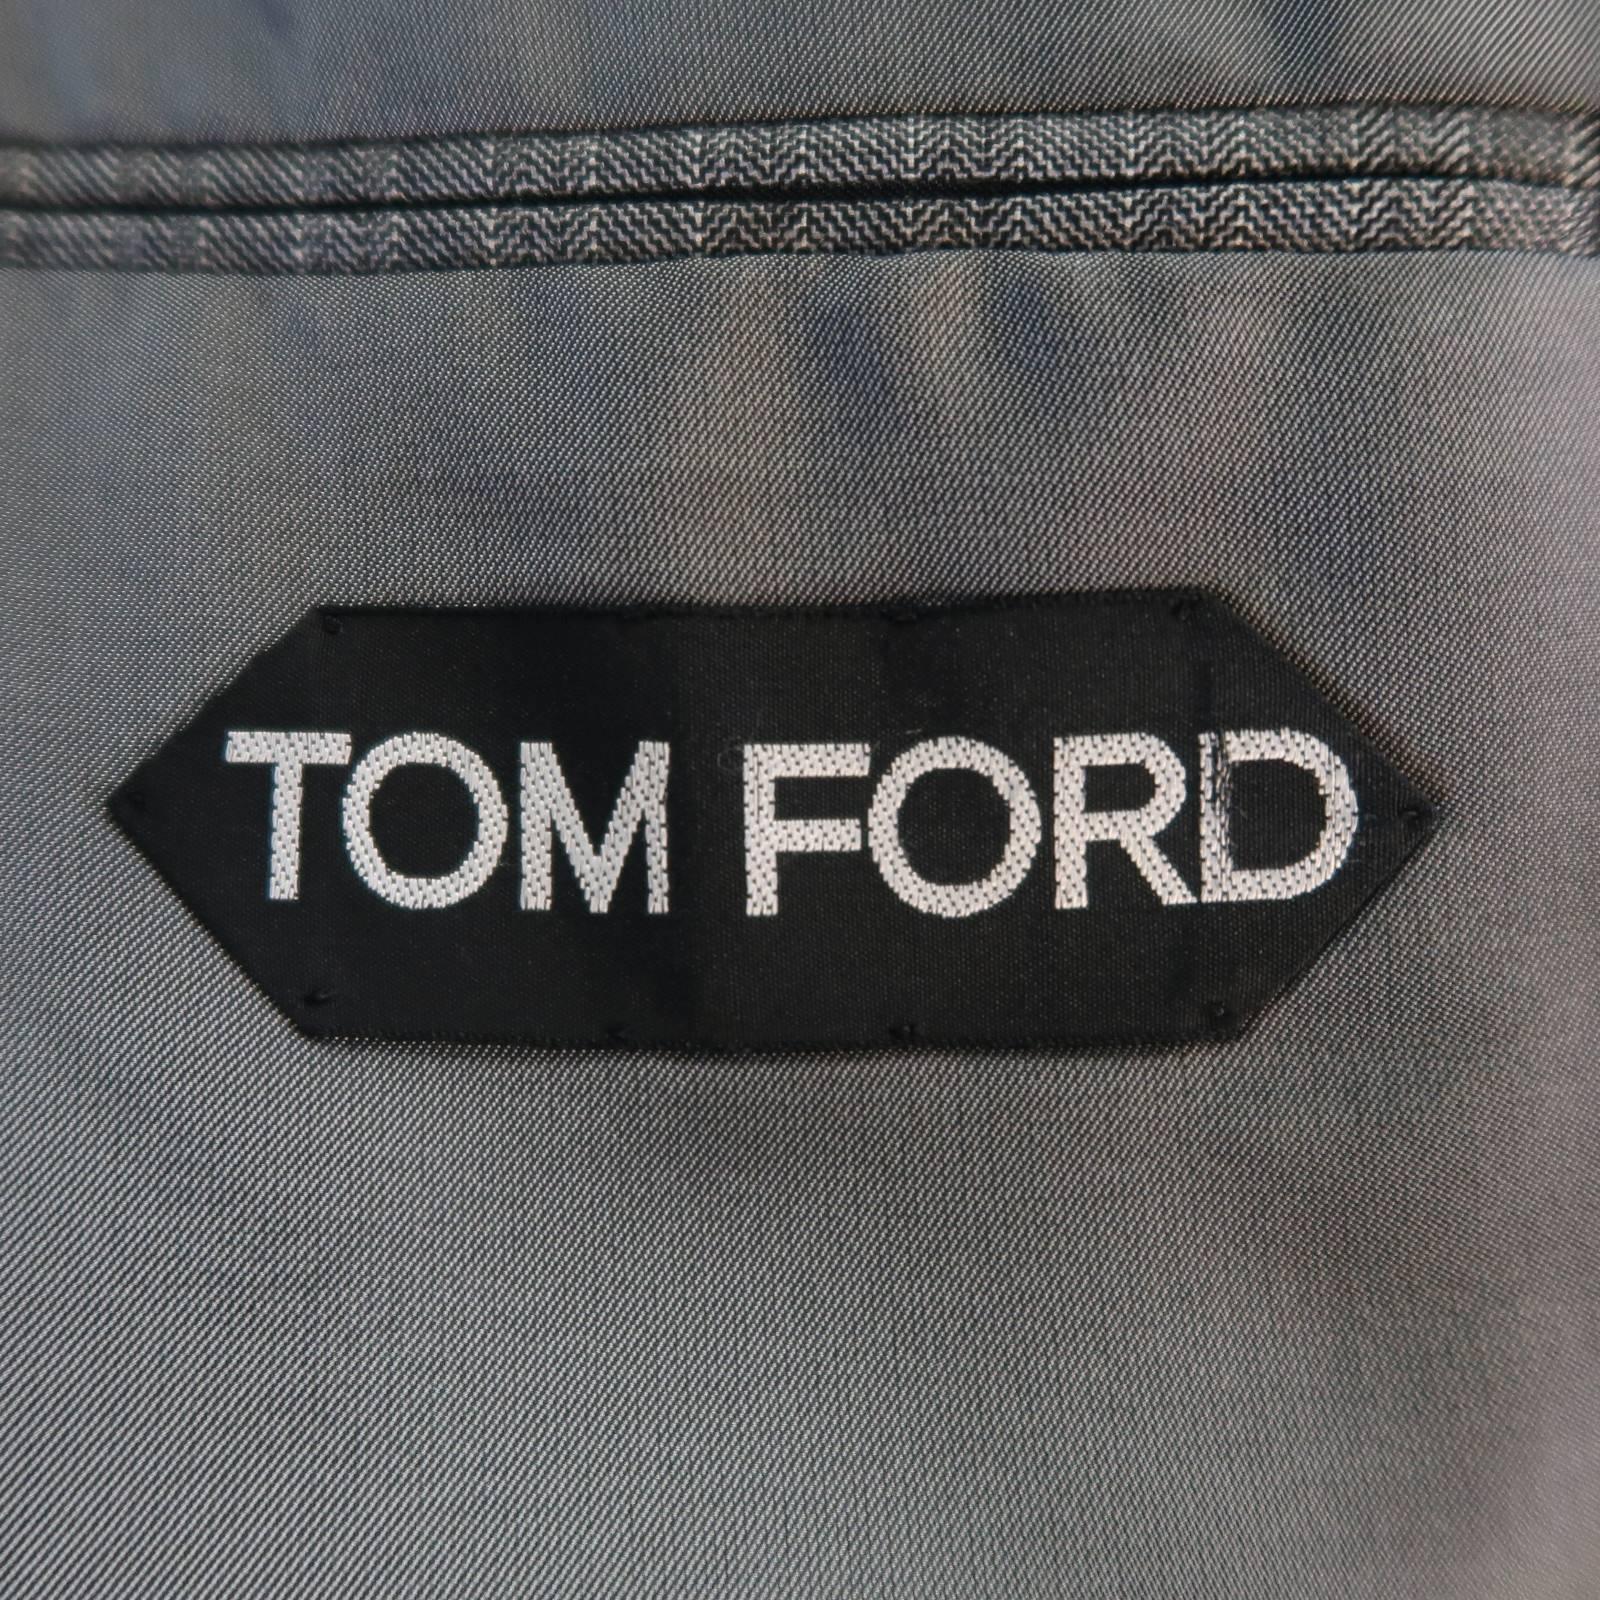 Tom Ford Suit - Men's Grey Herringbone Wool Peak Lapel Jacket & Pants 2